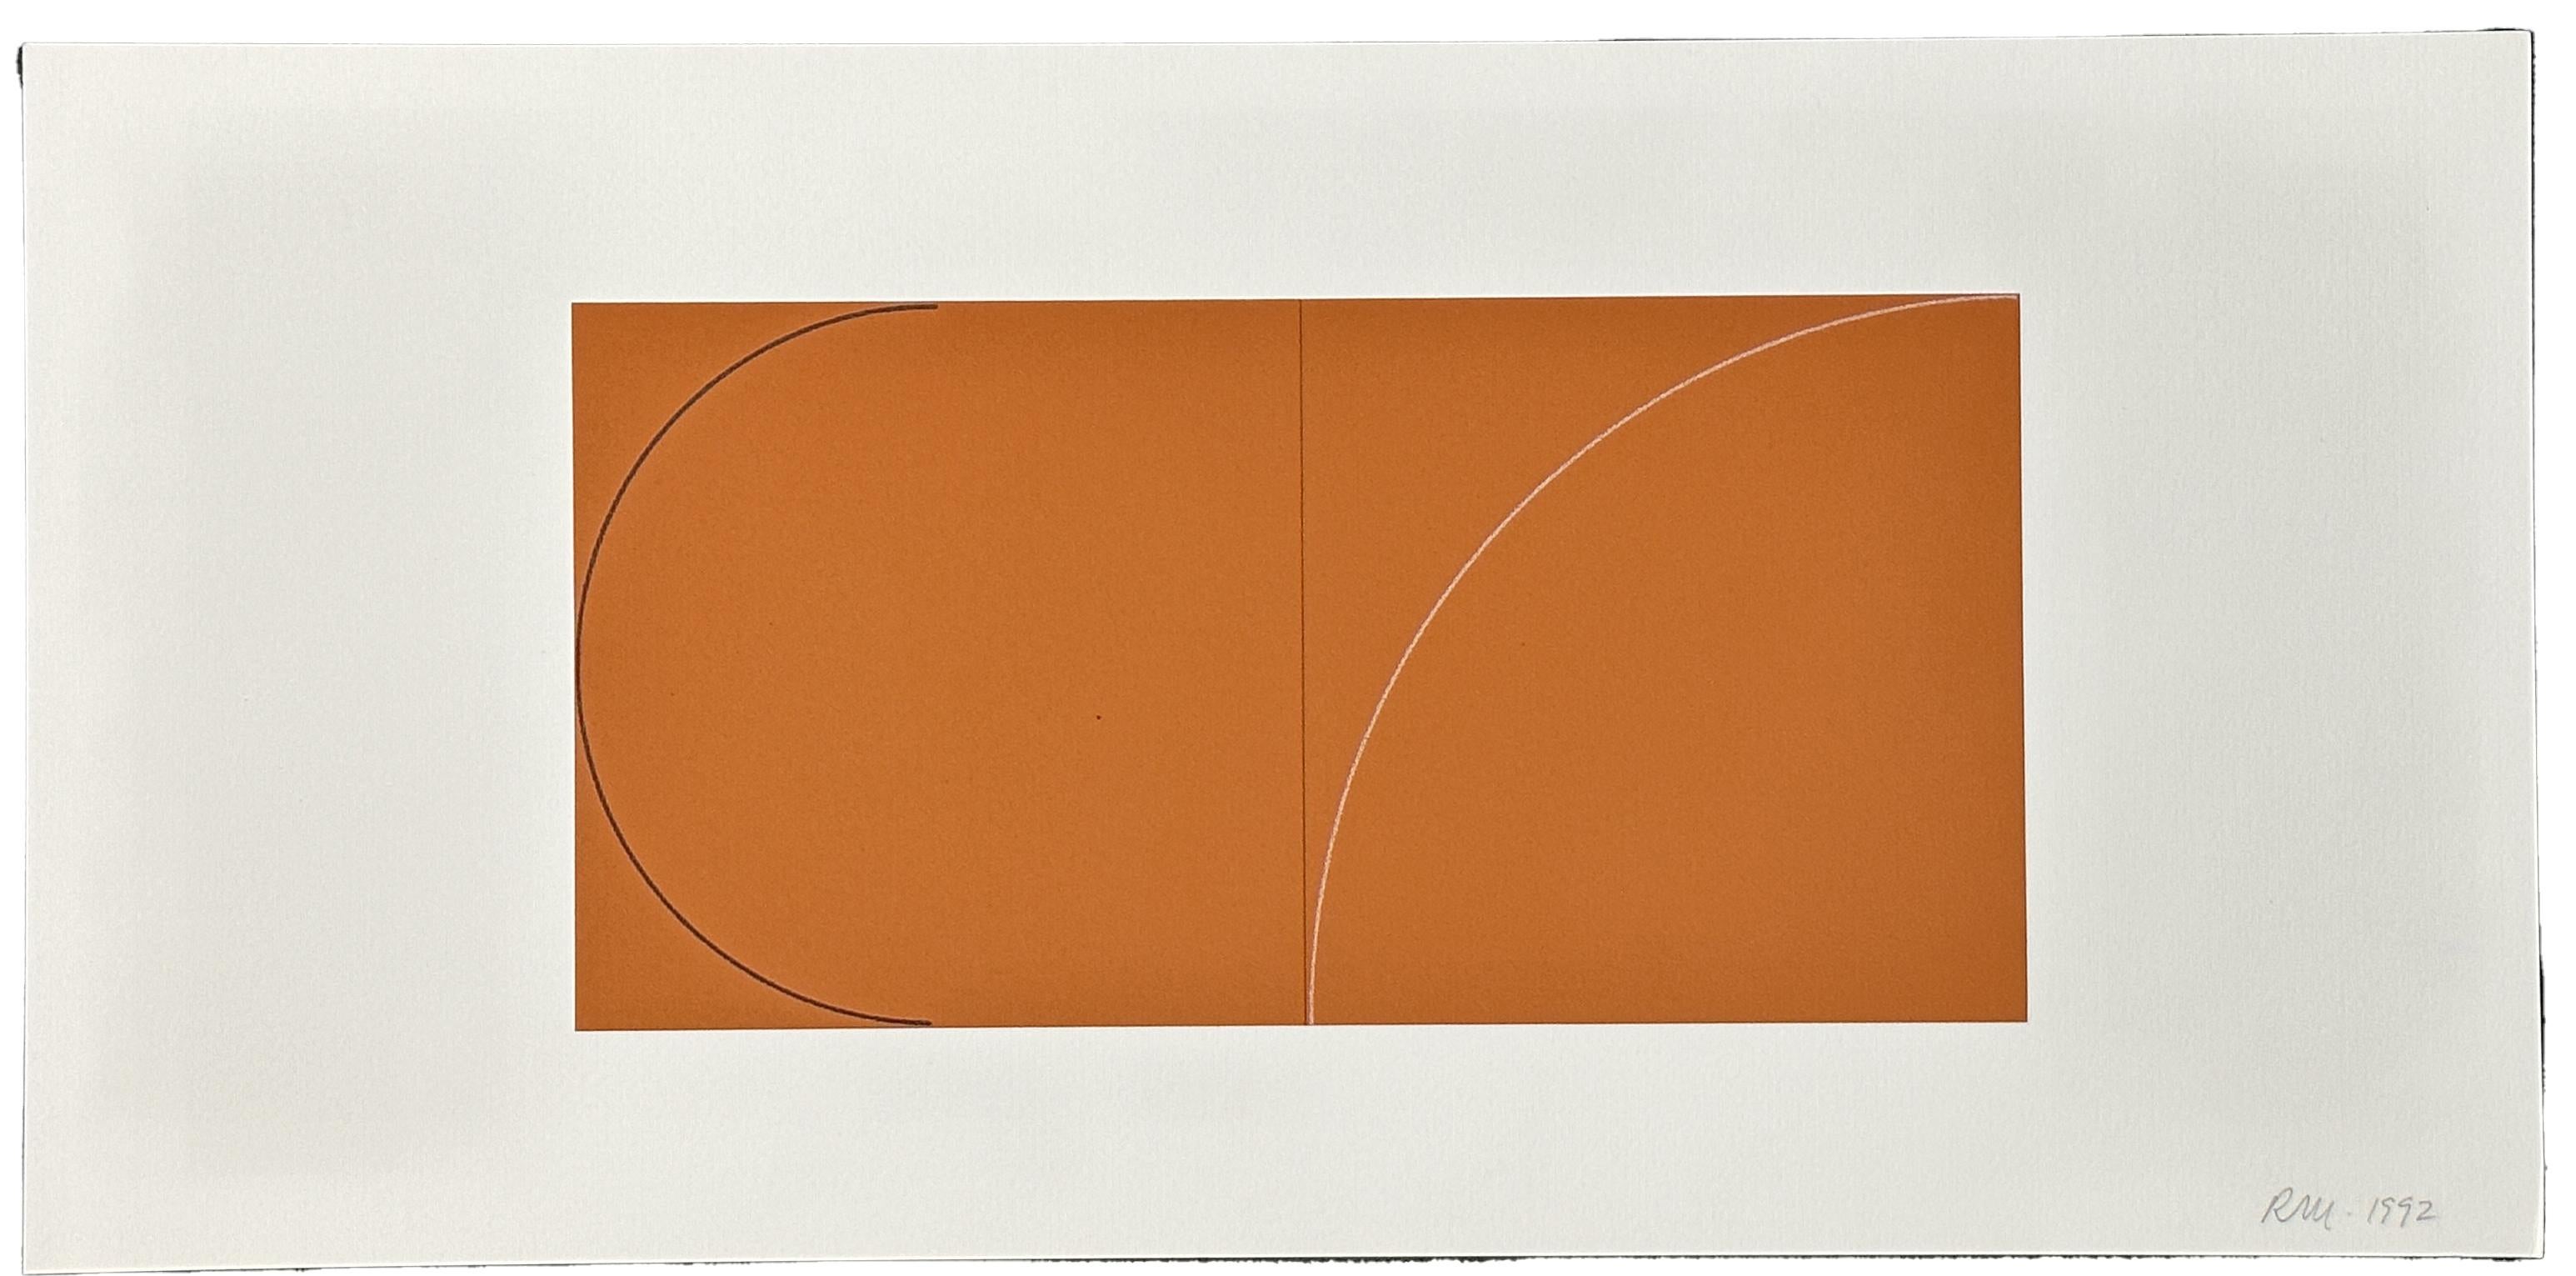 Peintures sur panneaux, 1973-1976 Un livre de sérigraphies 1992 - Géométrique abstrait Print par Robert Mangold